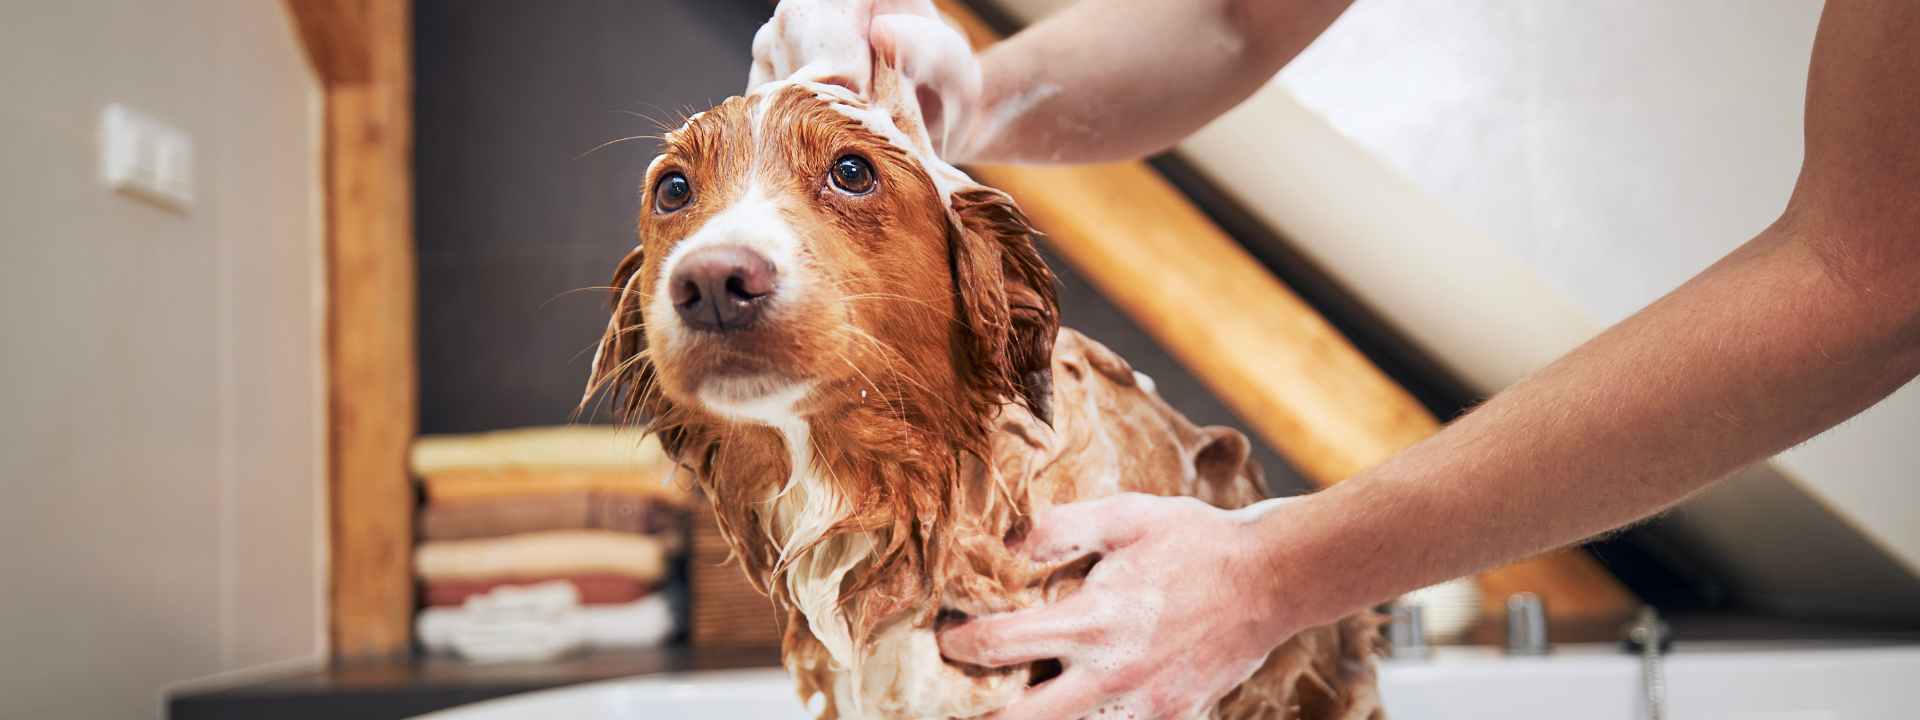 how to choose dog shampoo, top dog shampoo